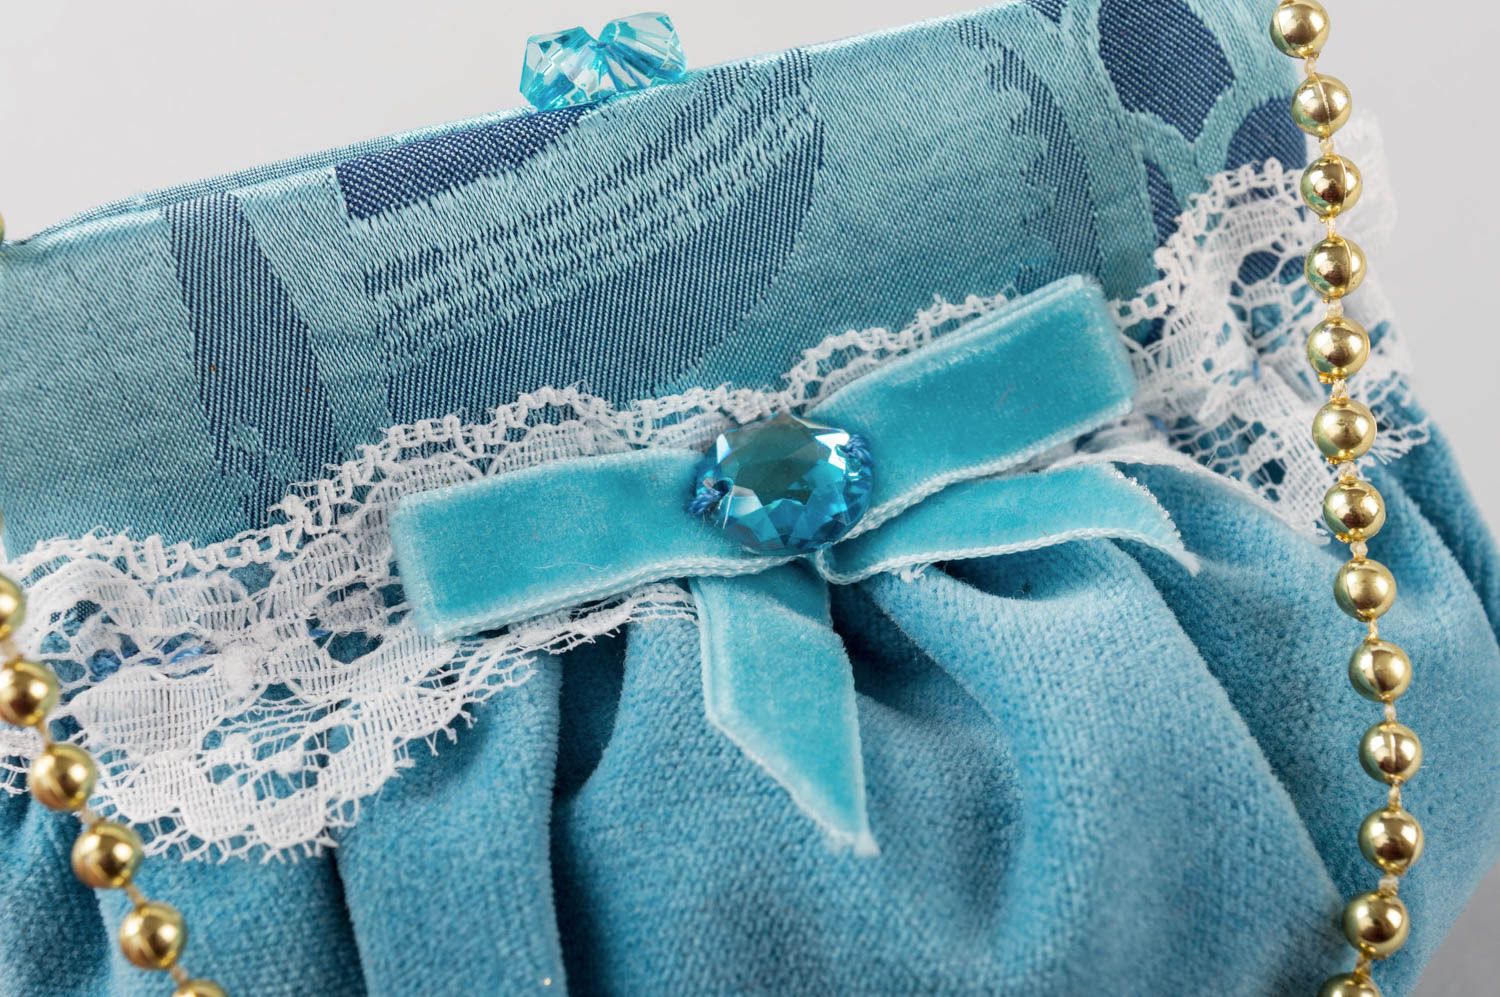 Интерьерная подвеска из ткани ручной работы оригинальная голубая симпатичная фото 5